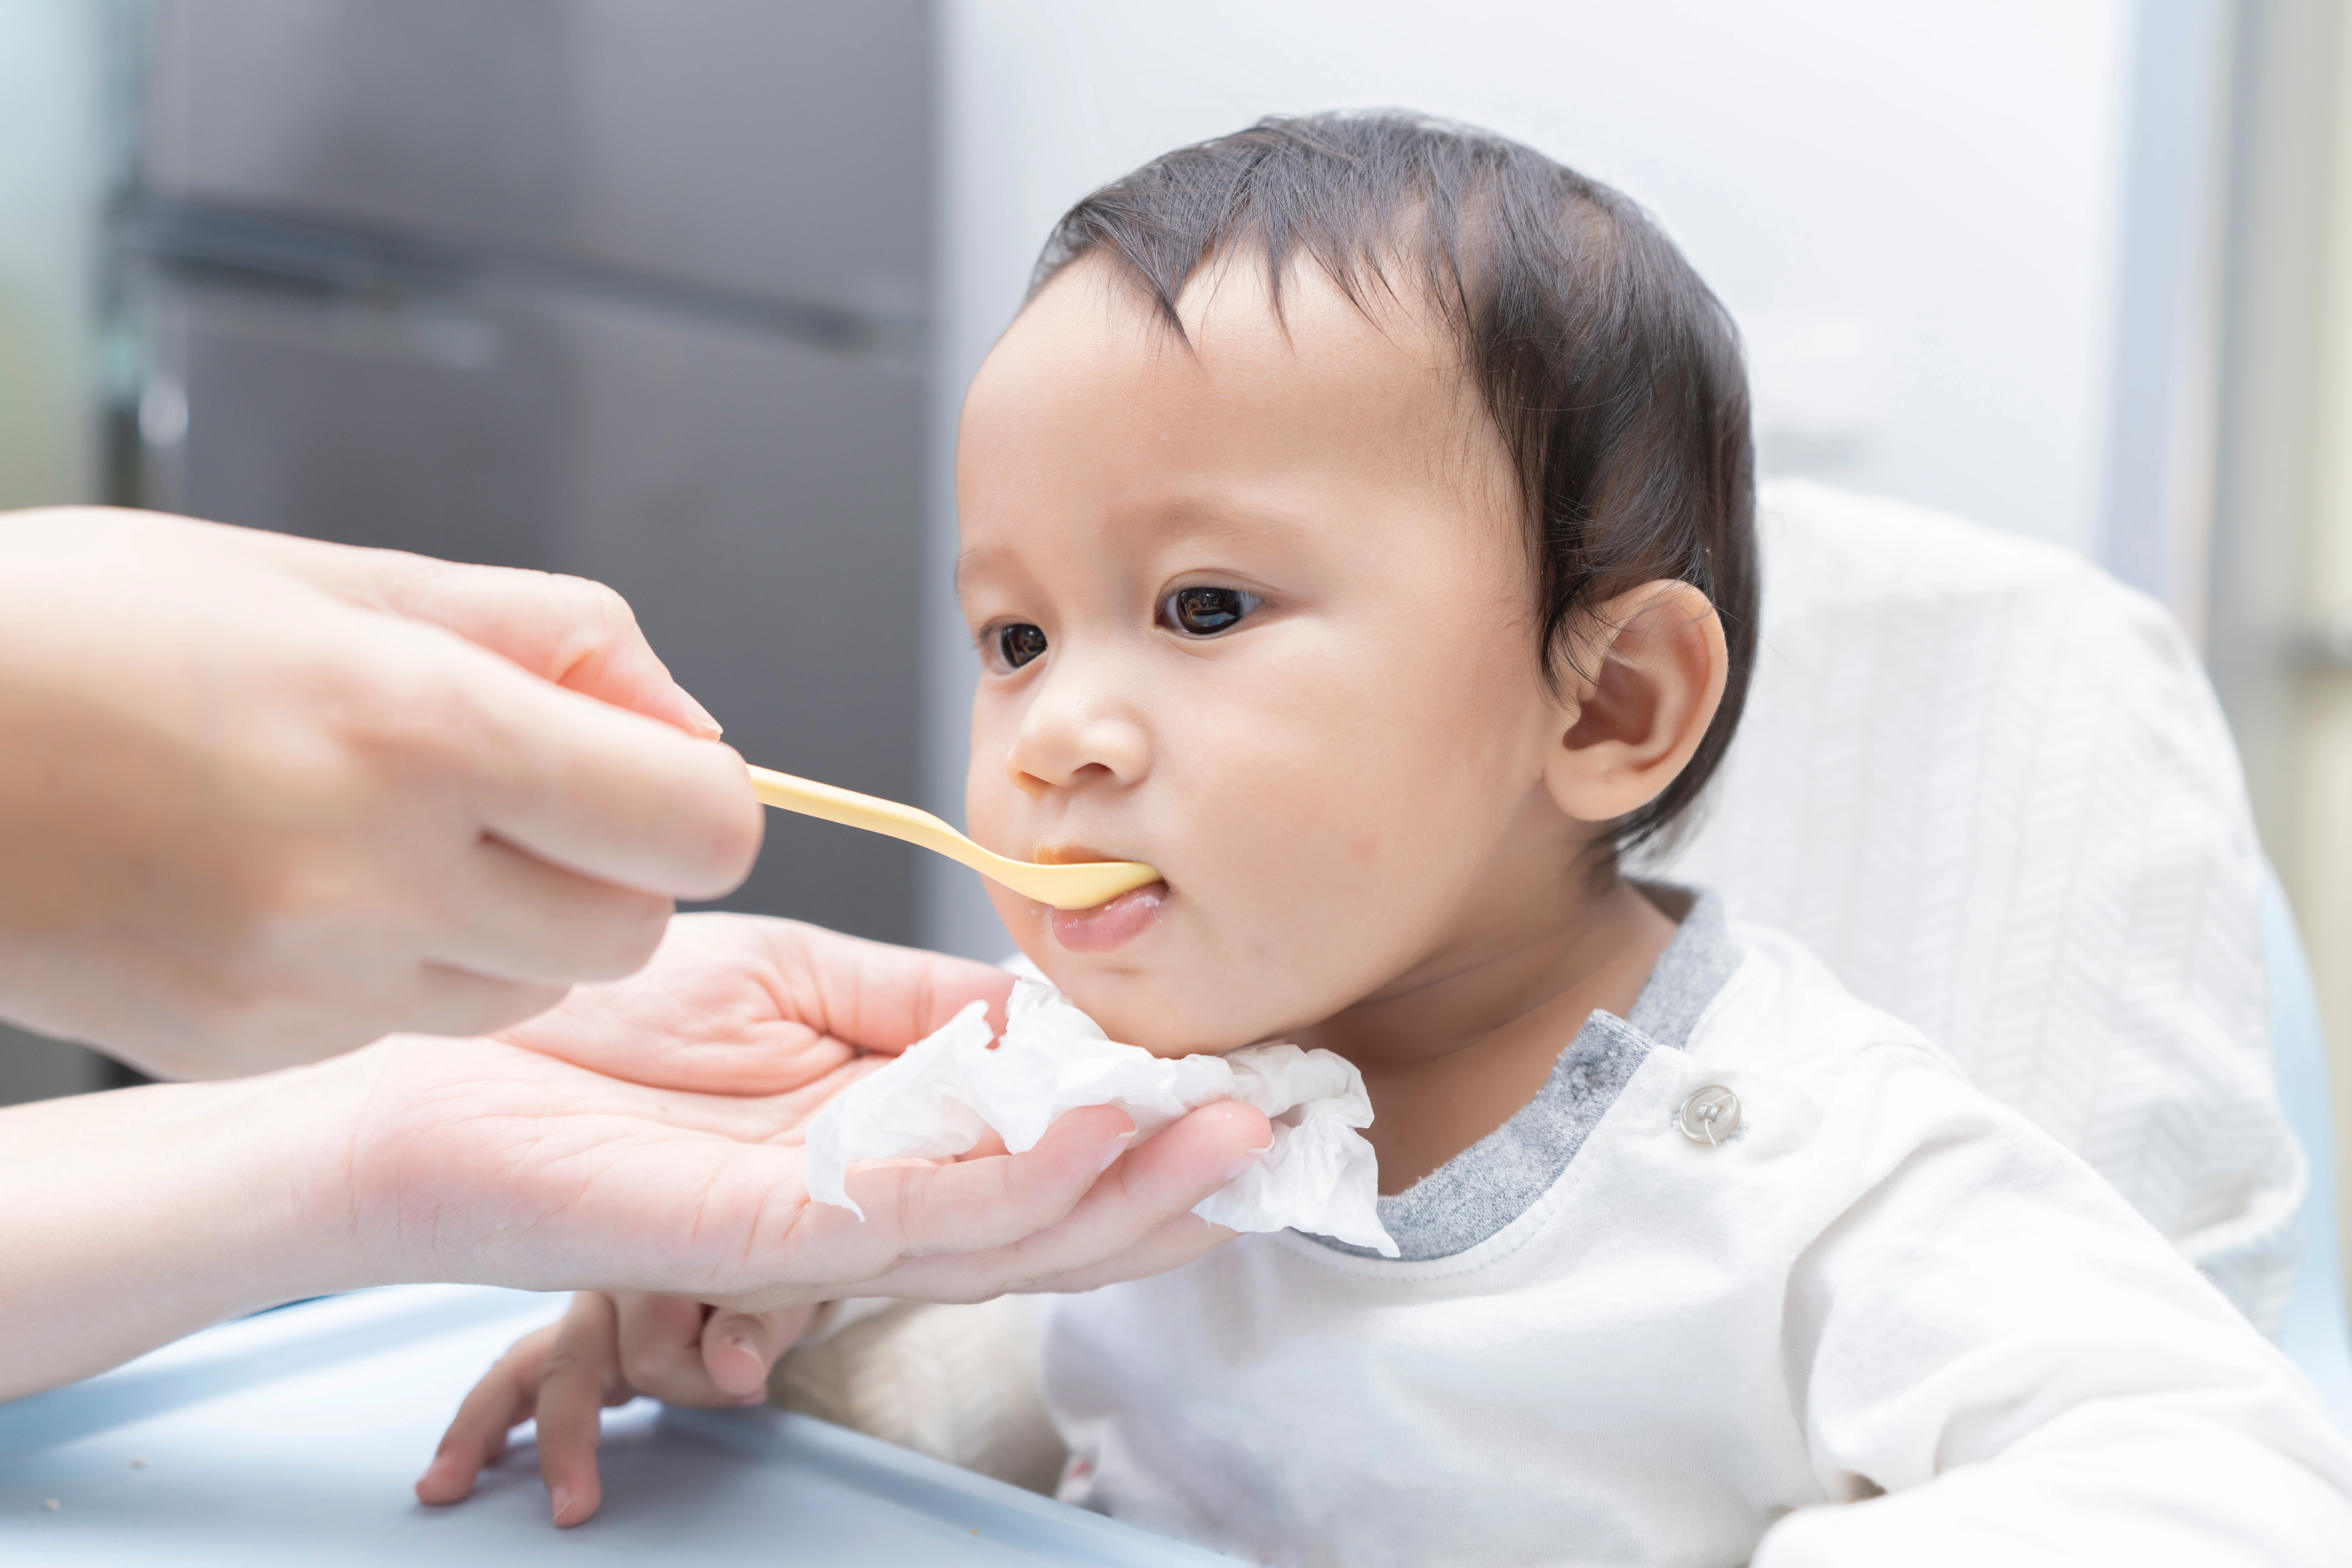 嬰兒患上急食腸患炎，胃口和精神較差，減慢餵食速度可減少再次嘔吐機會